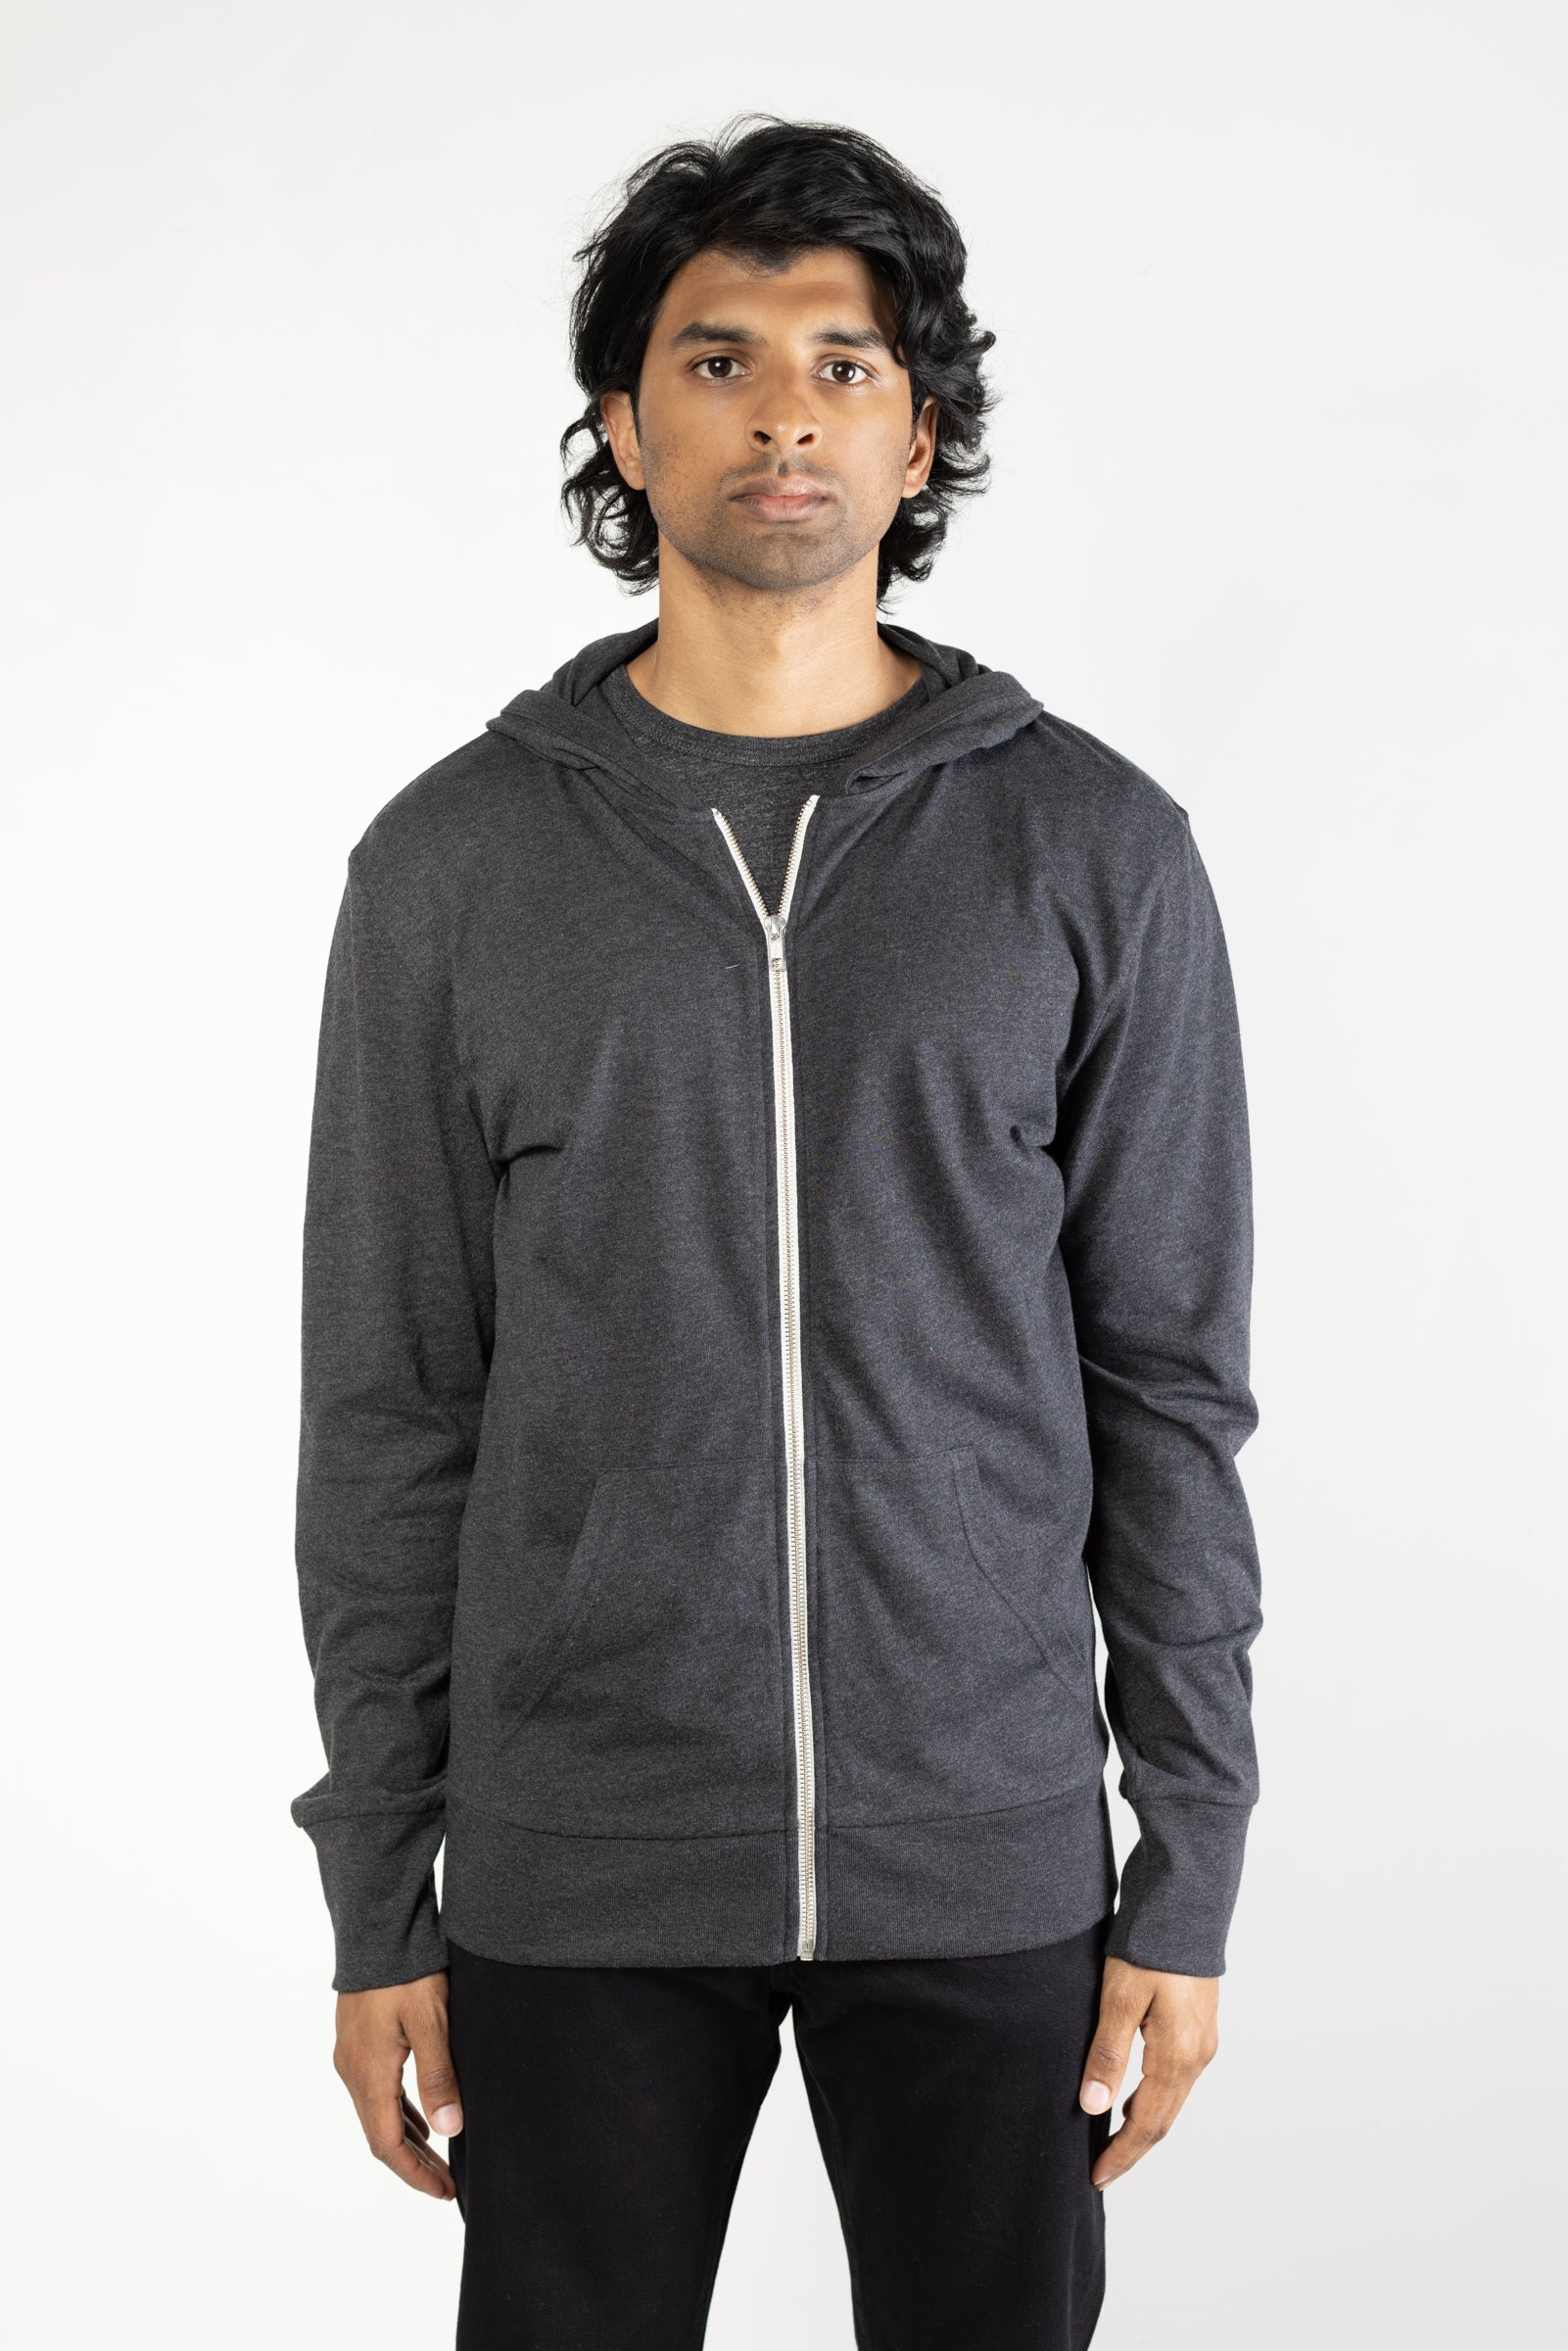 Tri-blend zip hoodie in Charcoal 01